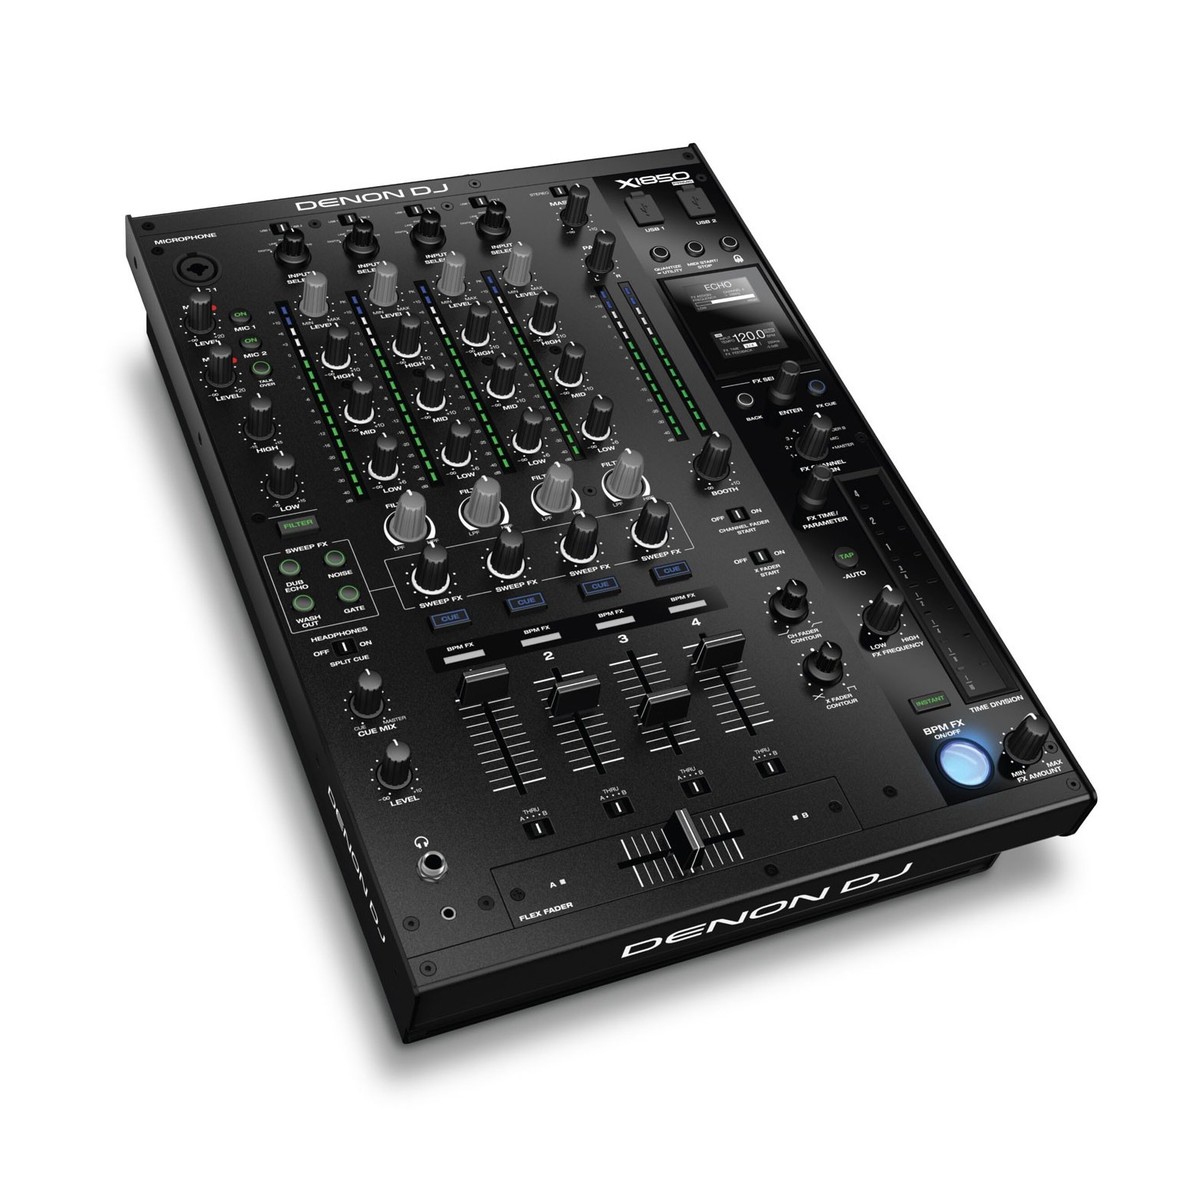 DENON DJ X1850 PRIME MIXER DIGITALE PER DJ 4 CANALI MIDI USB 2